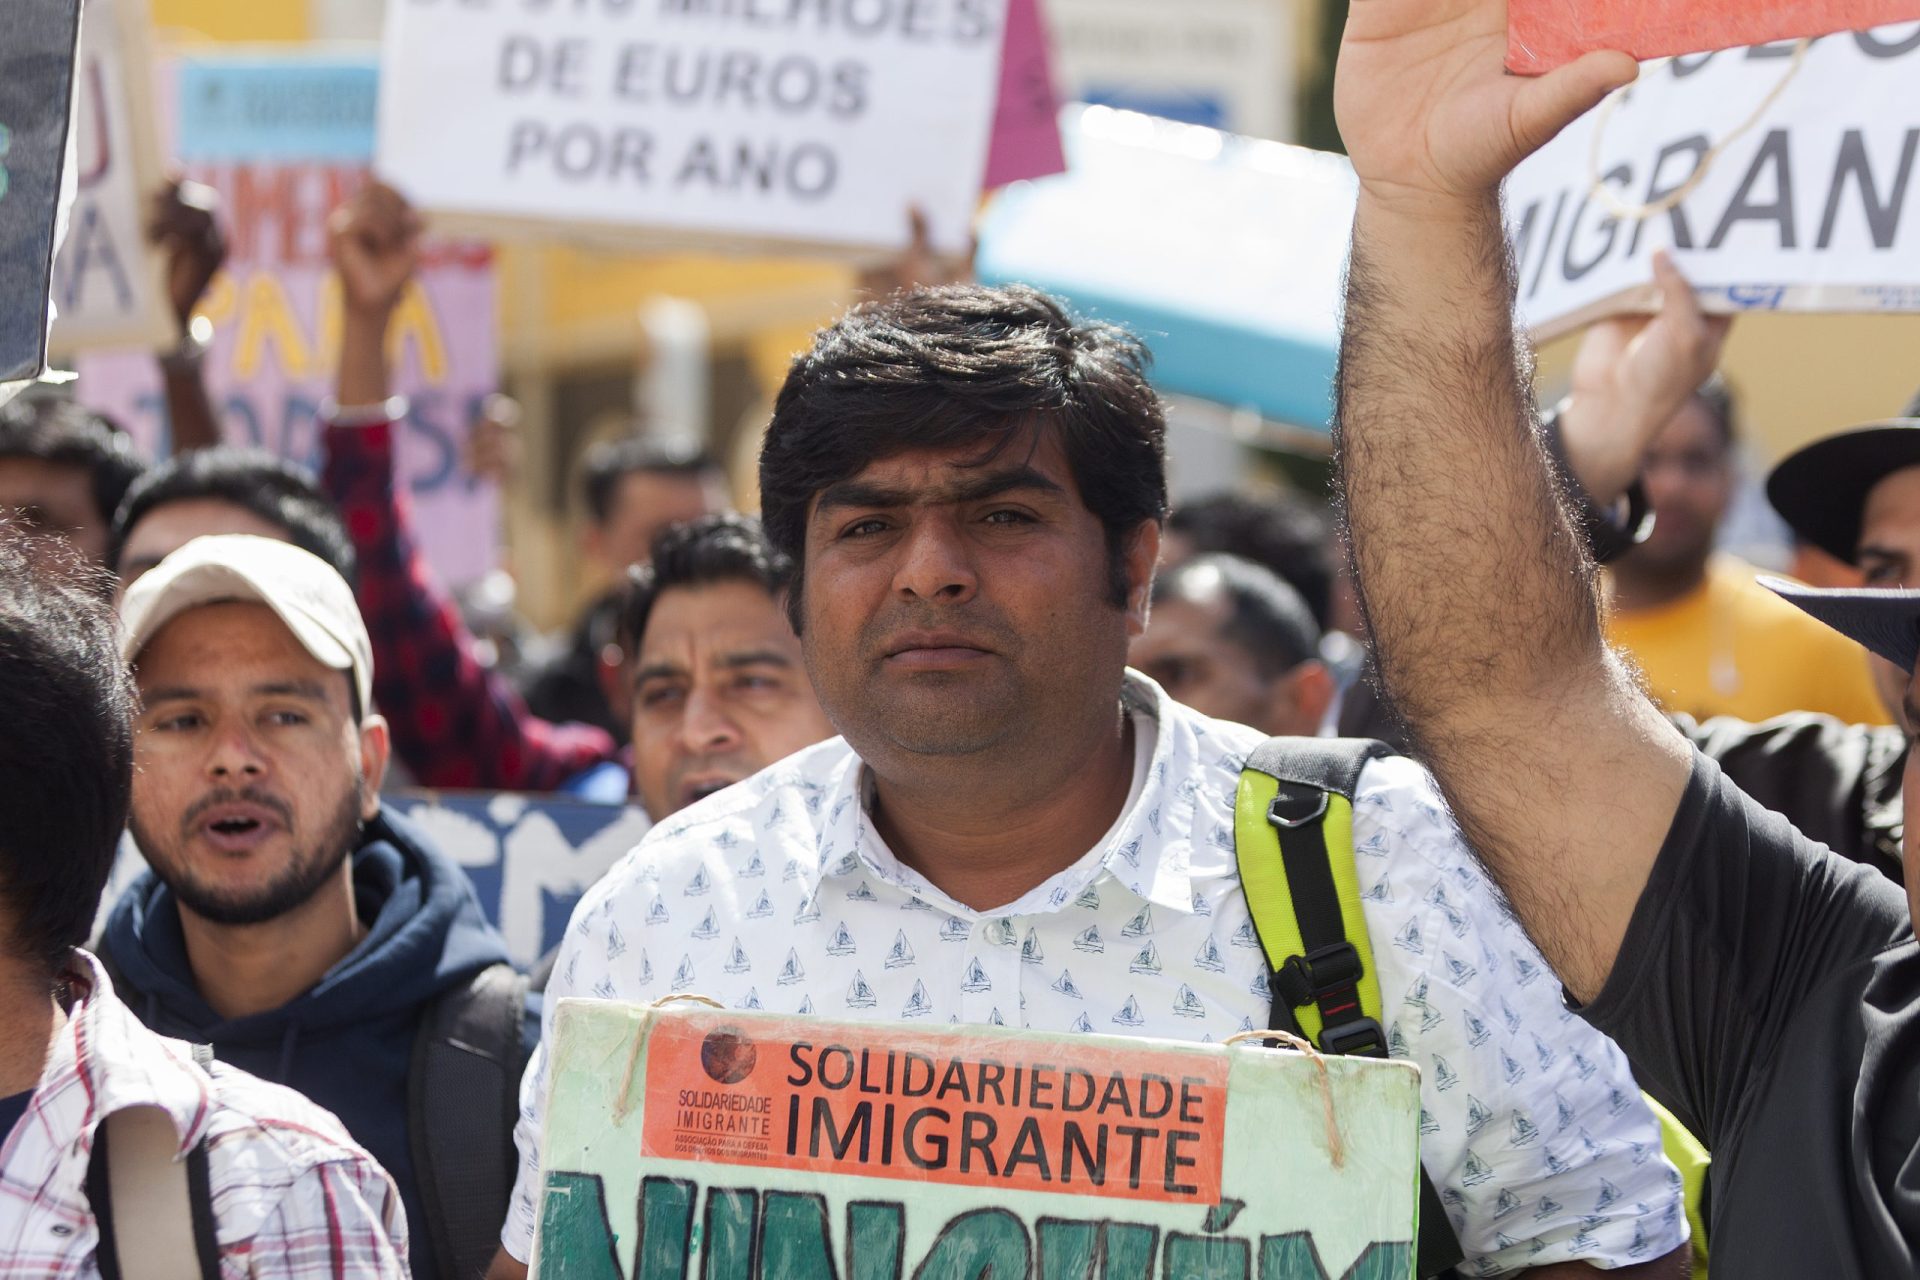 Tribunal de Contas deteta falhas no programa de apoio à imigração